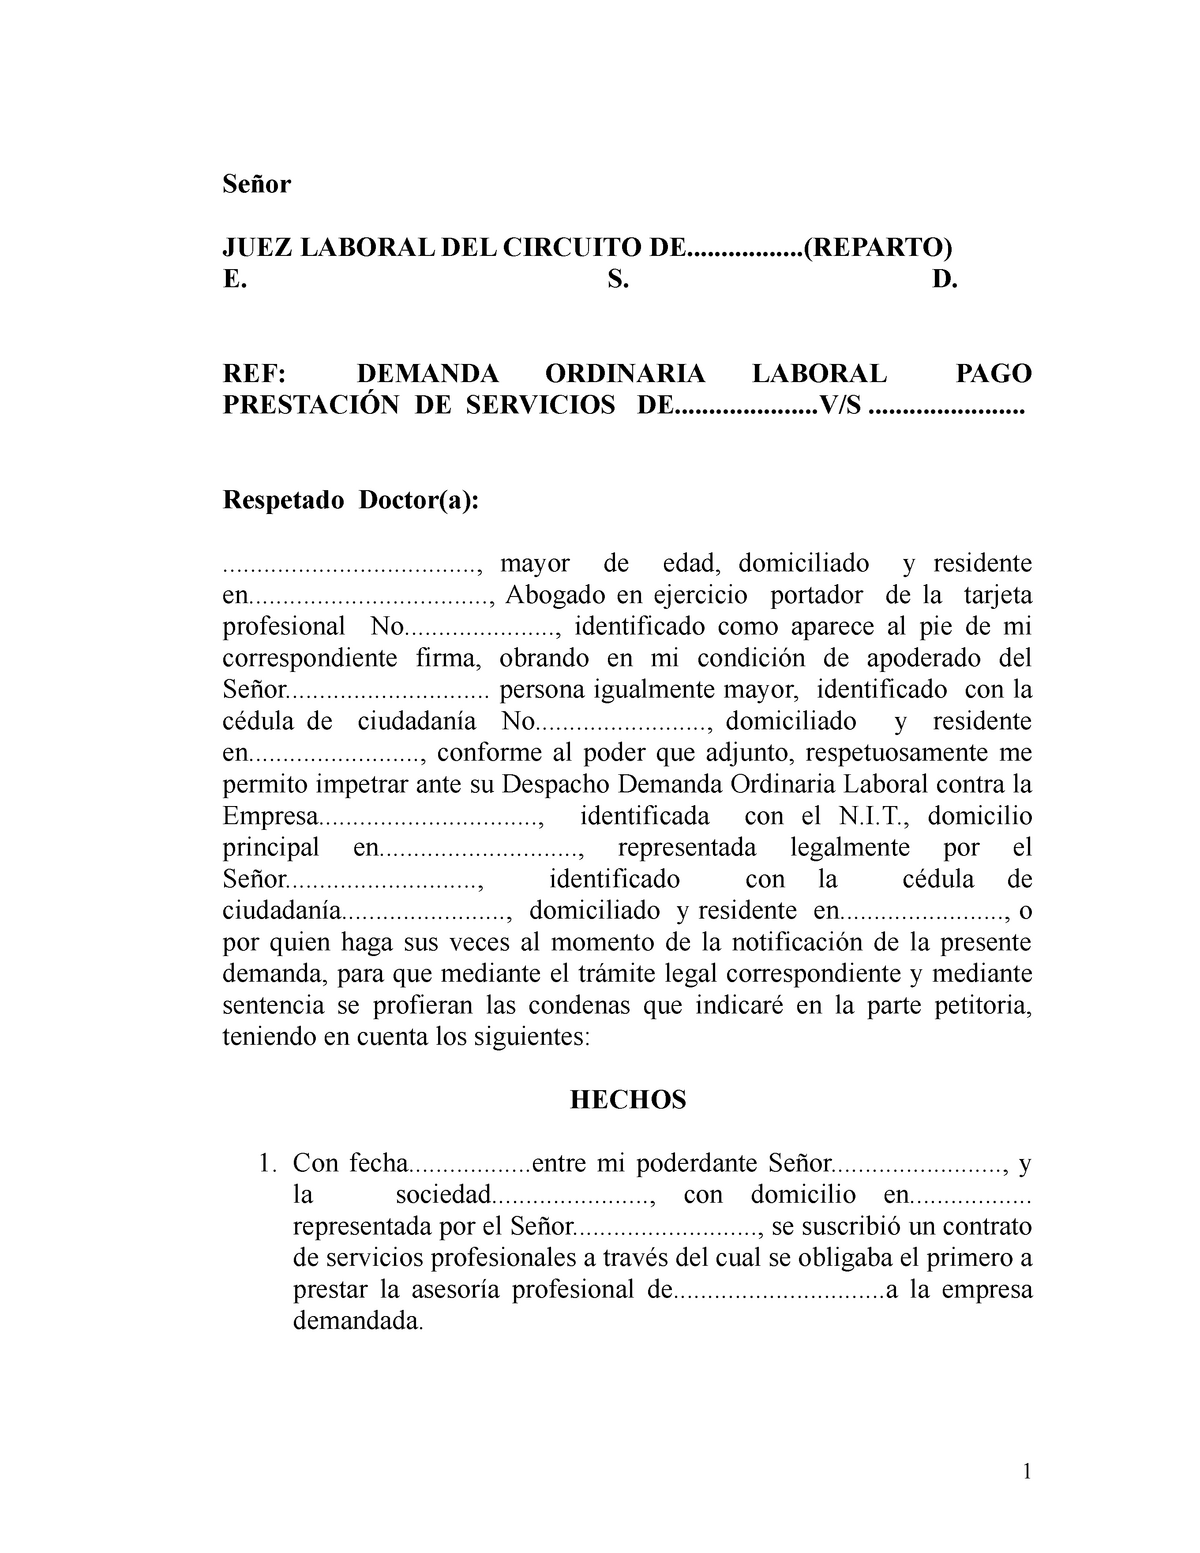 Demanda Ordinaria Laboral- Contrato Prestacion Servicios - Señor JUEZ  LABORAL DEL CIRCUITO - Studocu